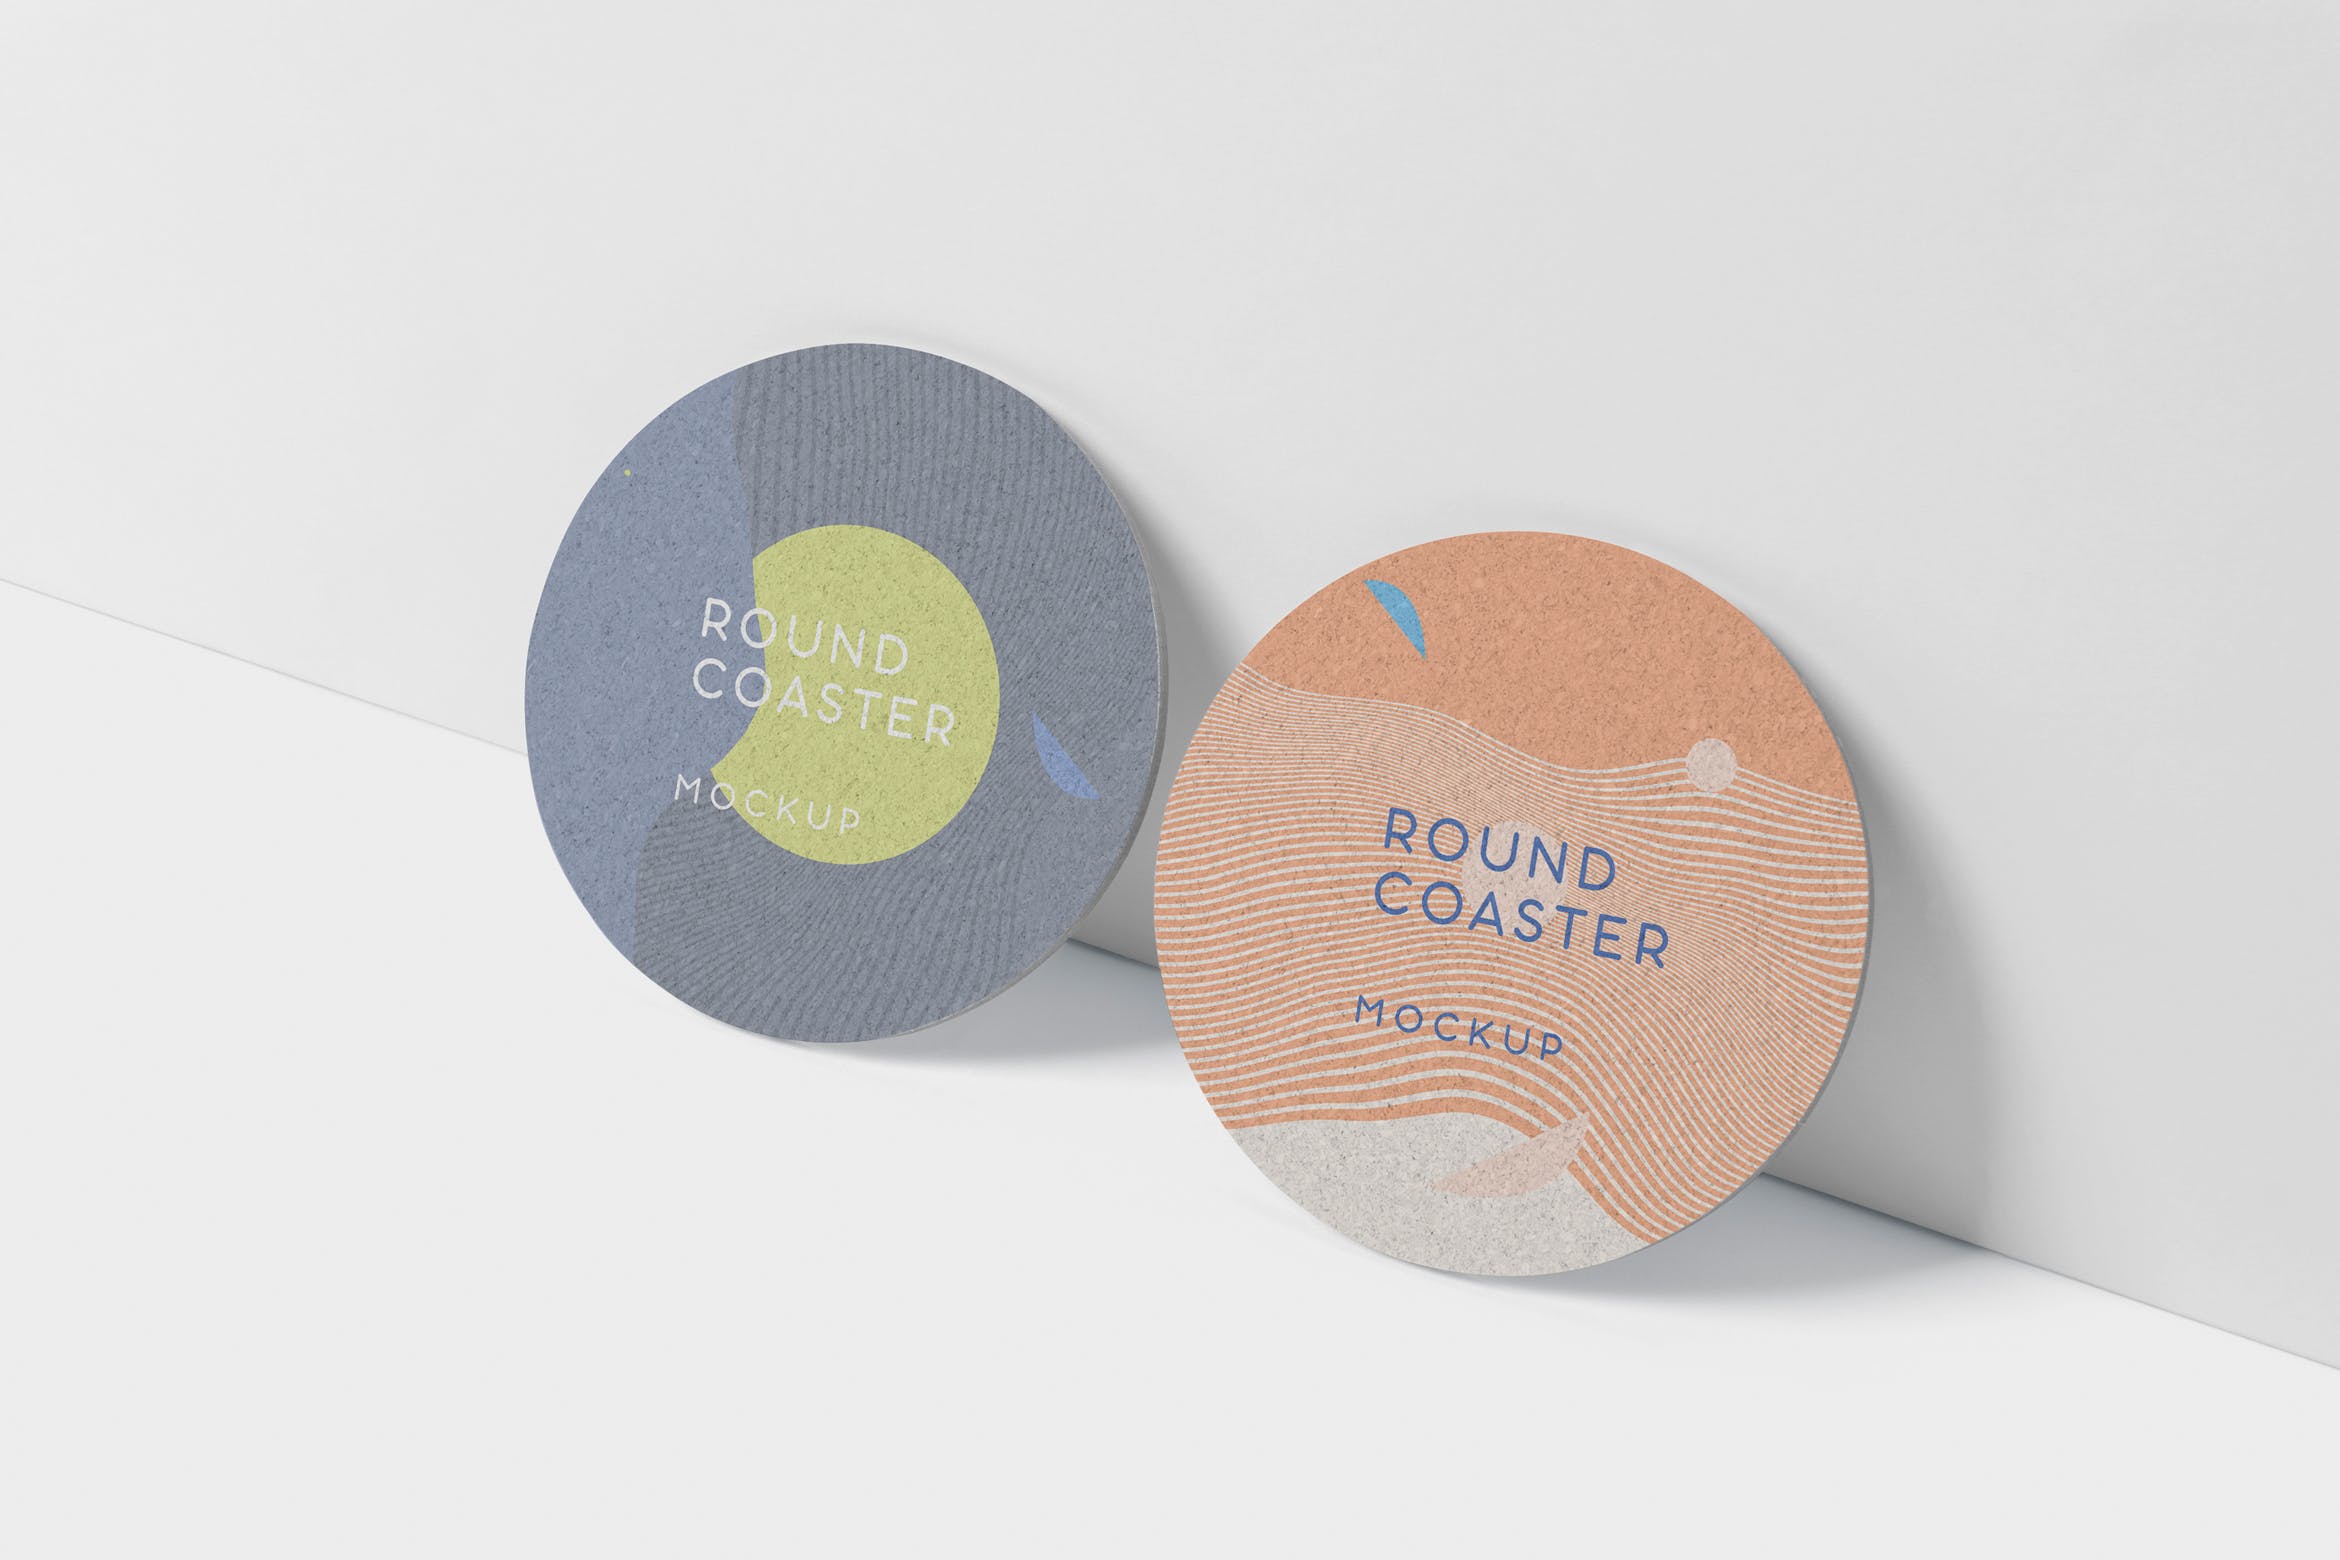 圆形杯垫图案设计效果图素材库精选 Round Coaster Mock-Up – Medium Size插图